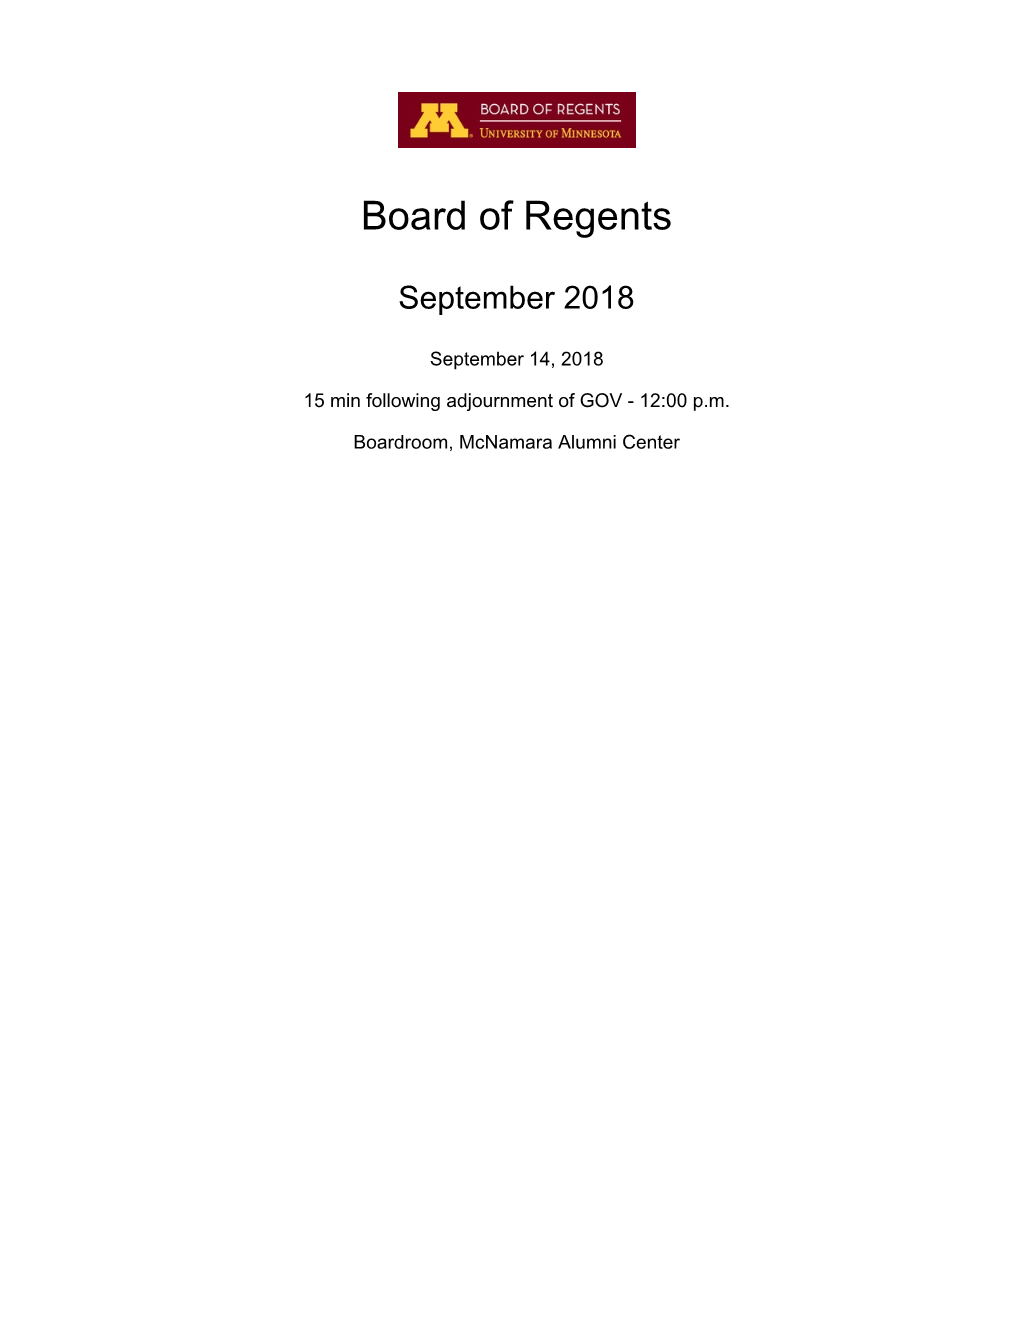 Board of Regents Docket Item Summary